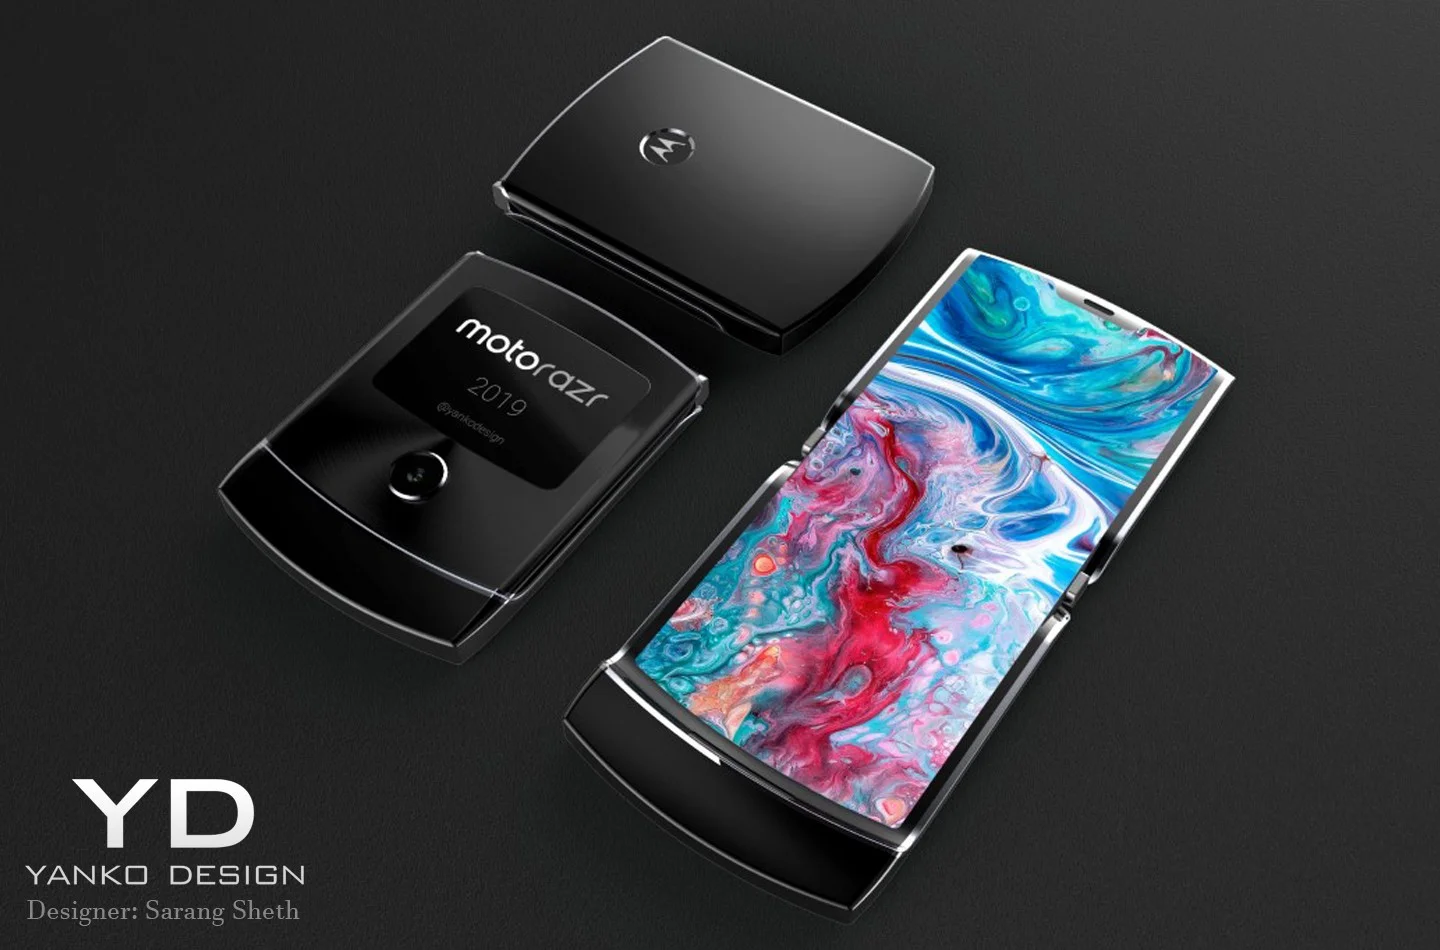 СМИ: Motorola RAZR с гибким экраном выйдет в Европе до конца года - фото 1